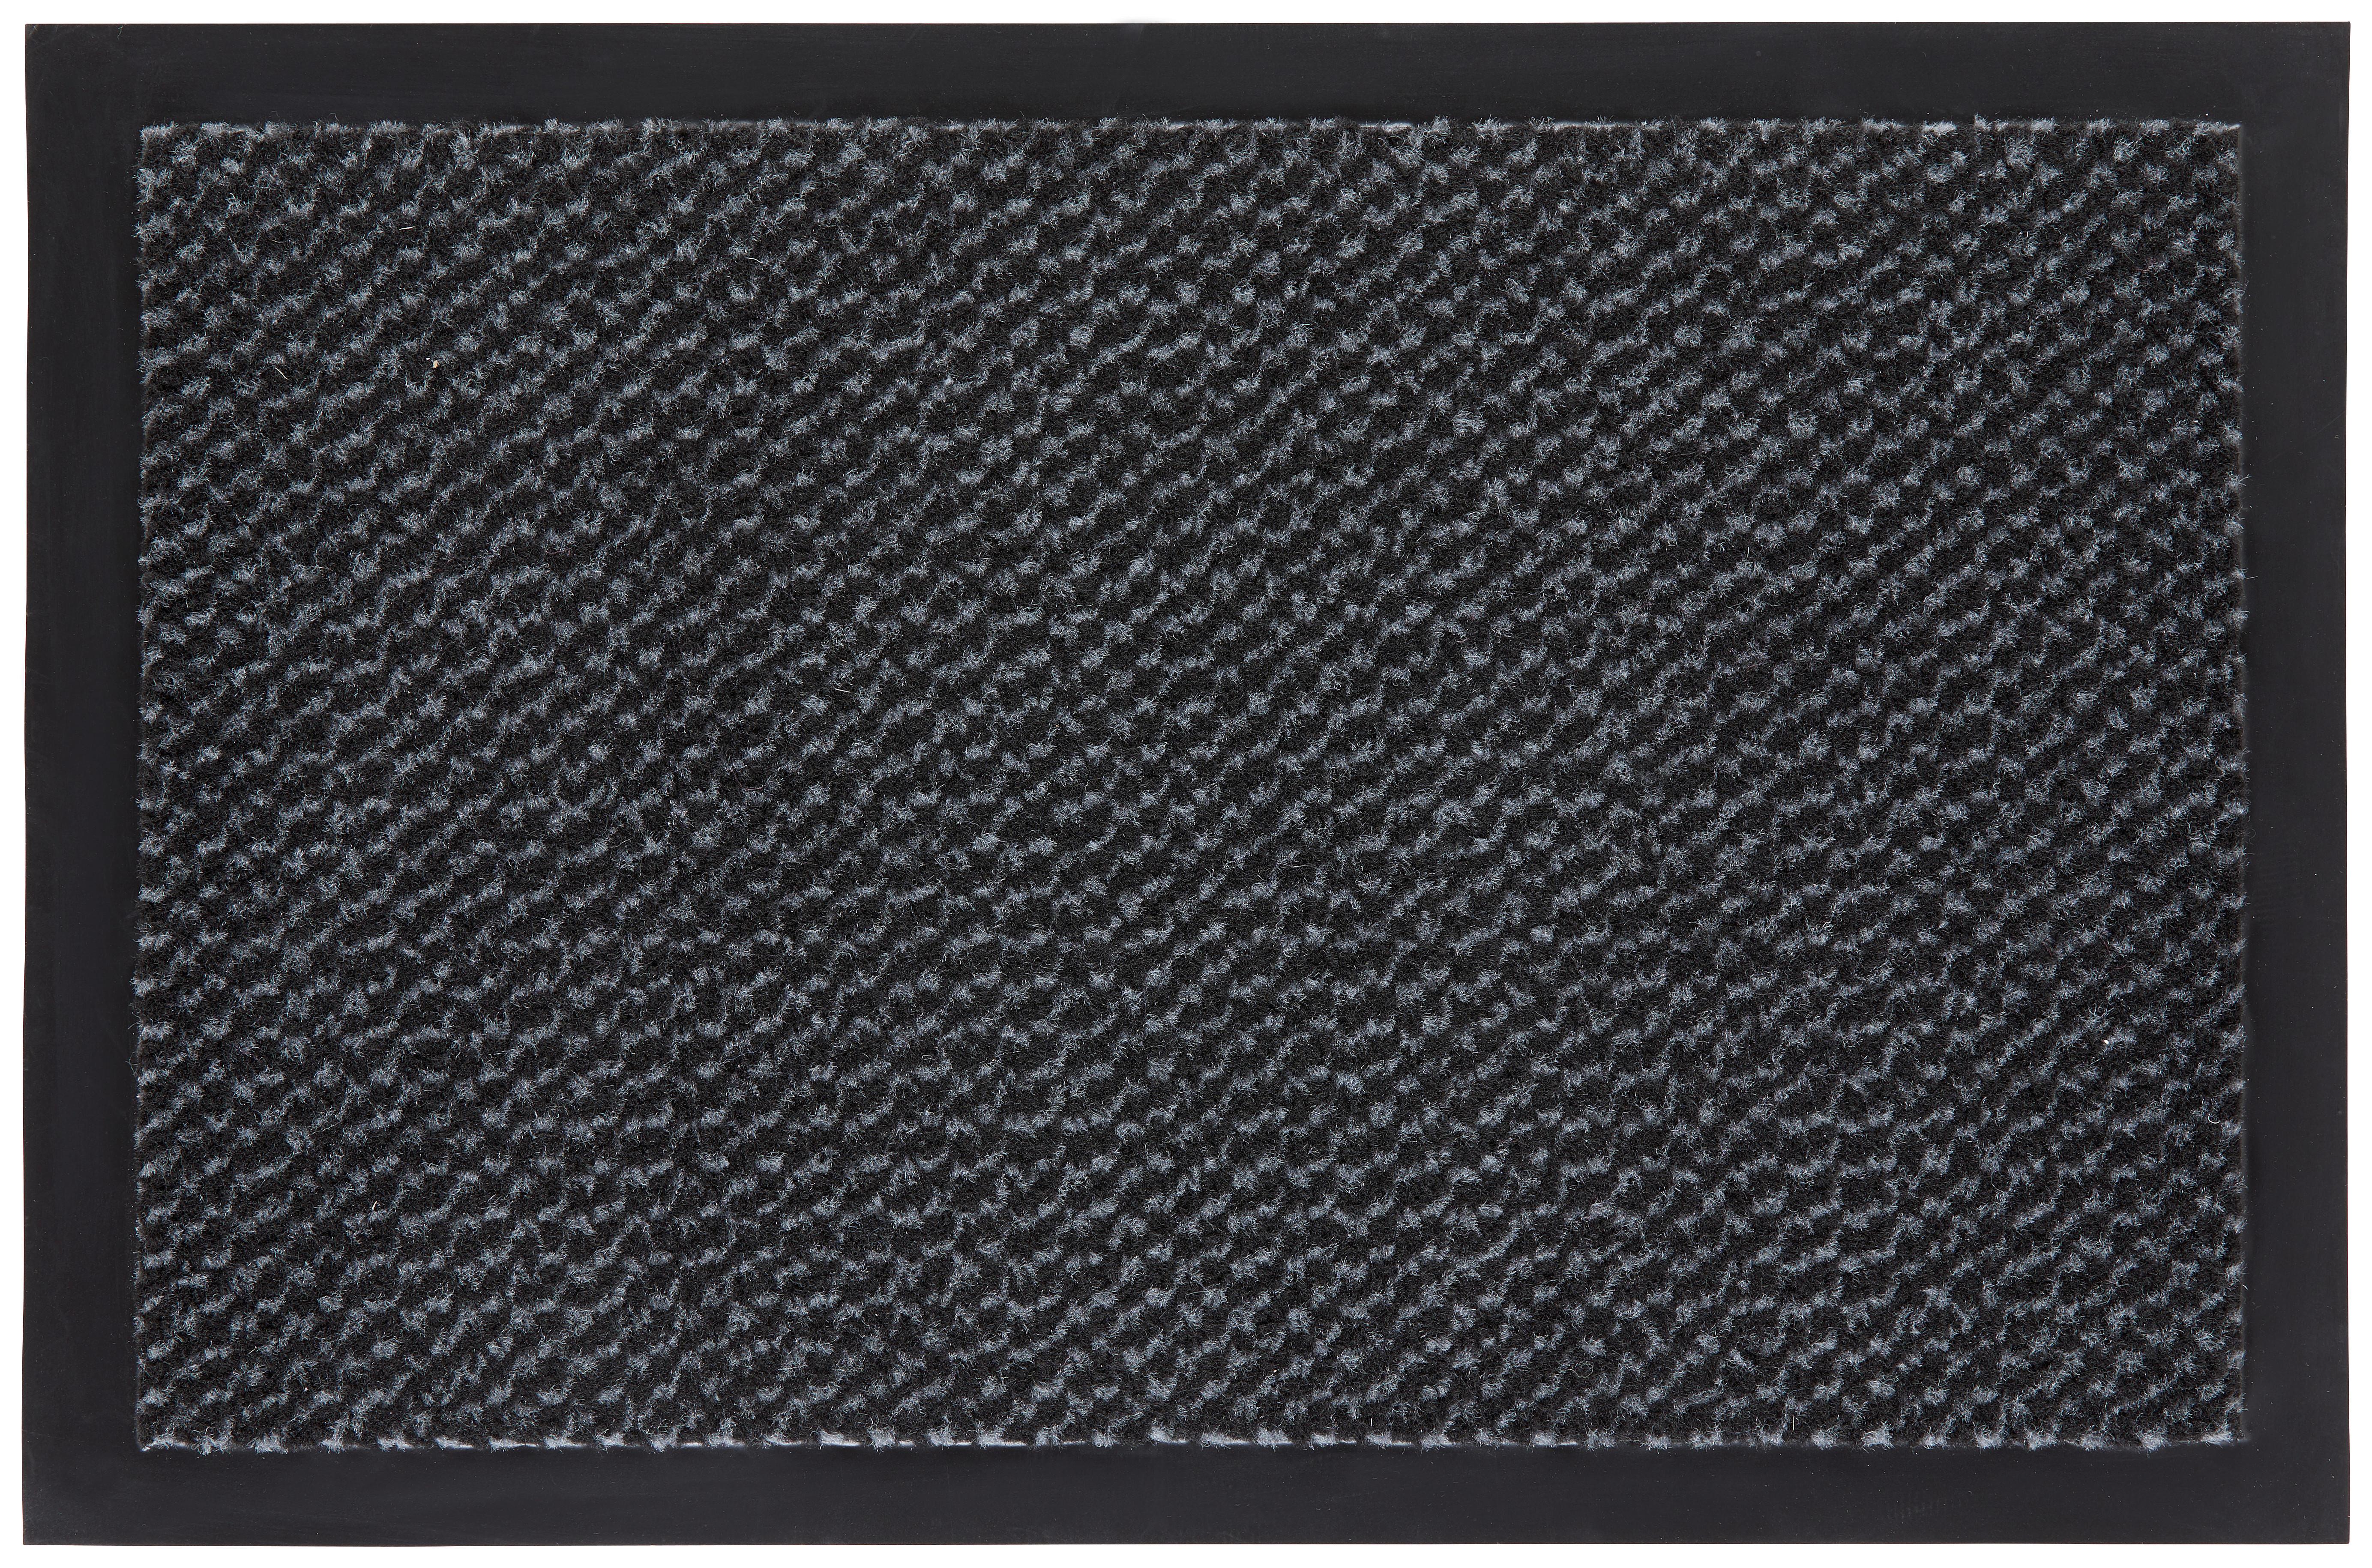 Dveřní Rohožka Hamptons 1, 40/60cm - šedá/černá, Konvenční, textil (40/60cm) - Modern Living